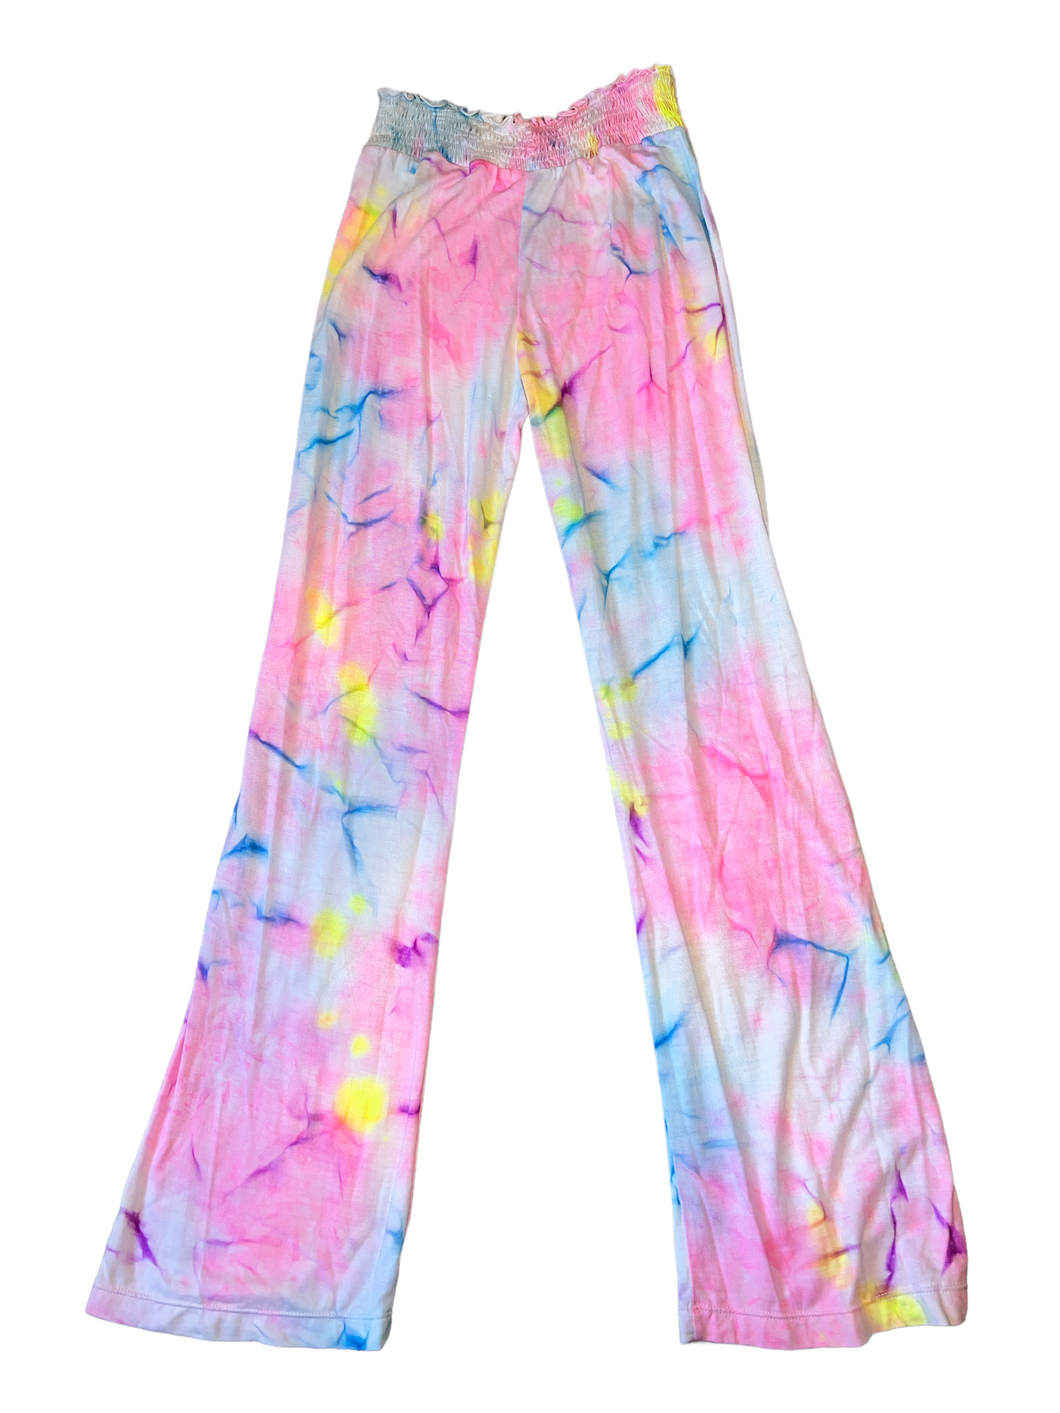 Flowers By Zoe girls tie dye smocked lounge pants XL NEW